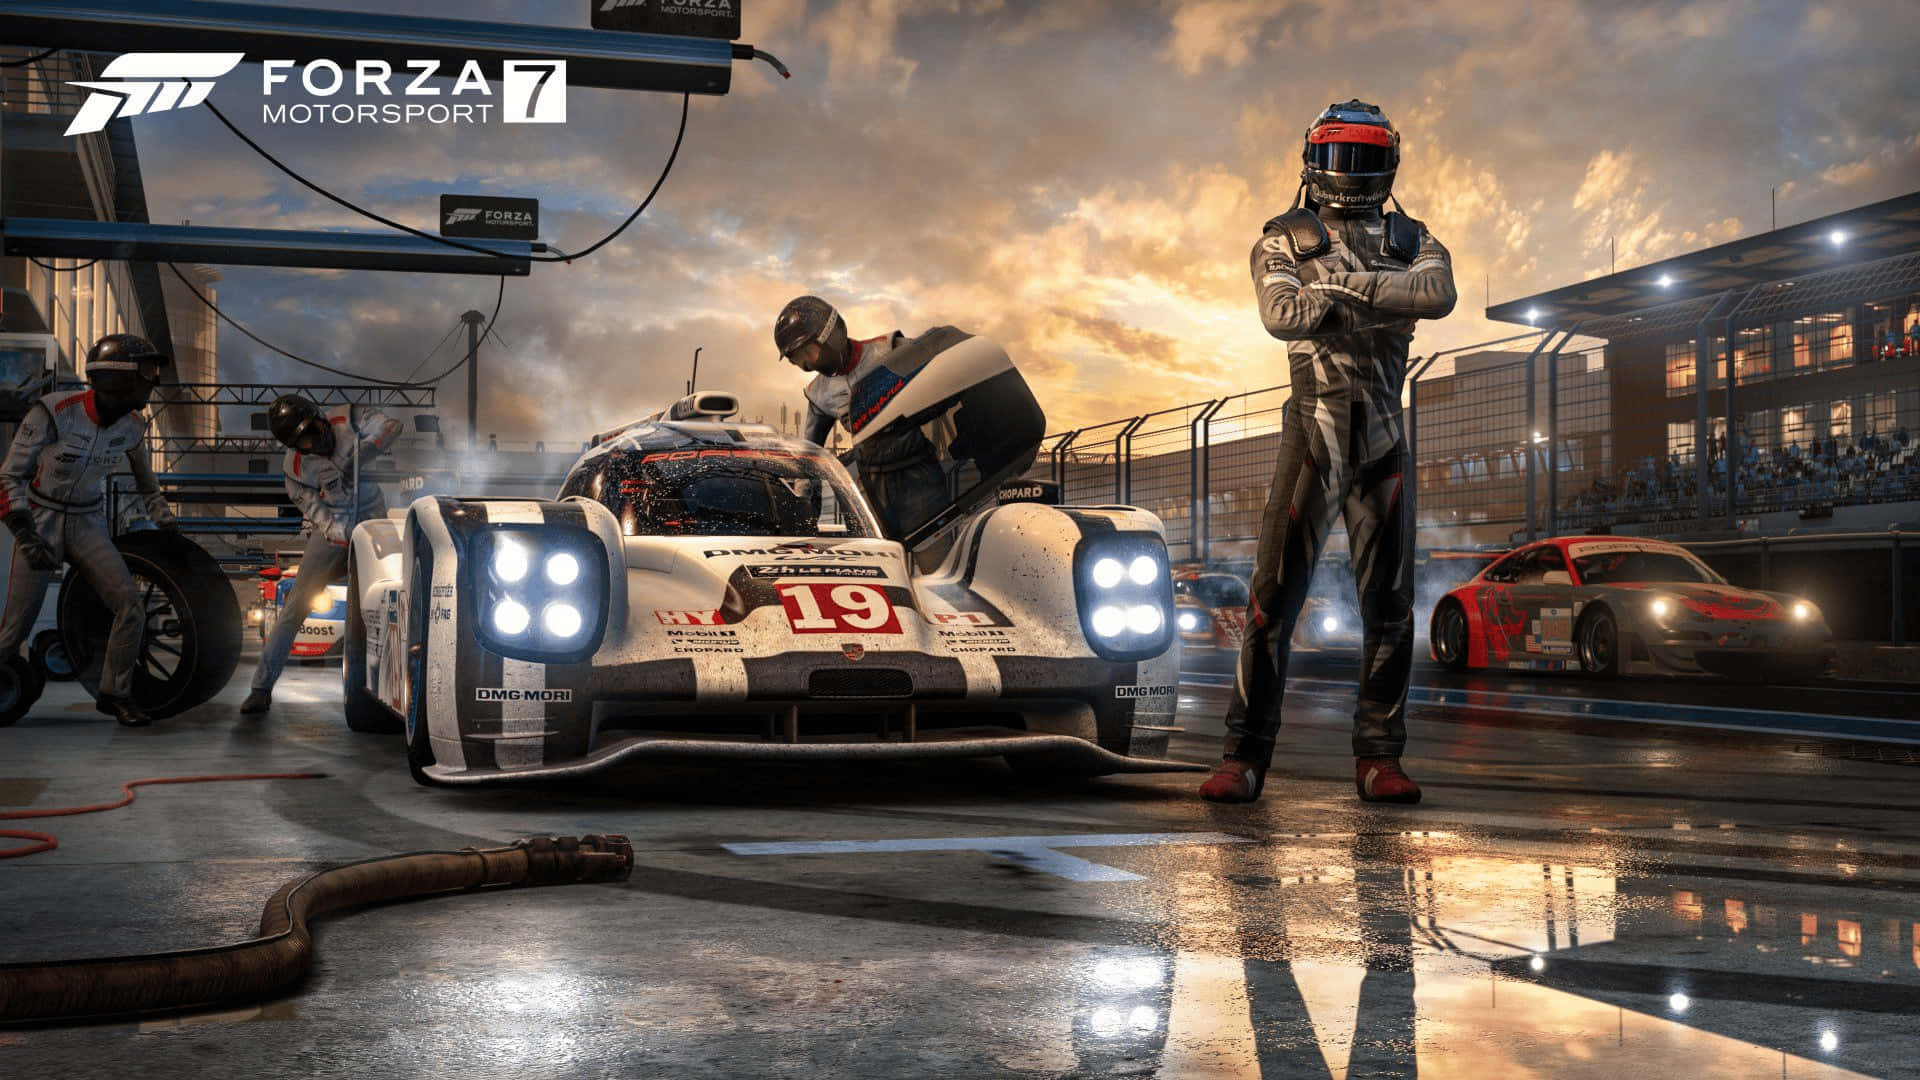 Upplevden Spännande Upplevelsen Av 1080p Forza Motorsport 7.